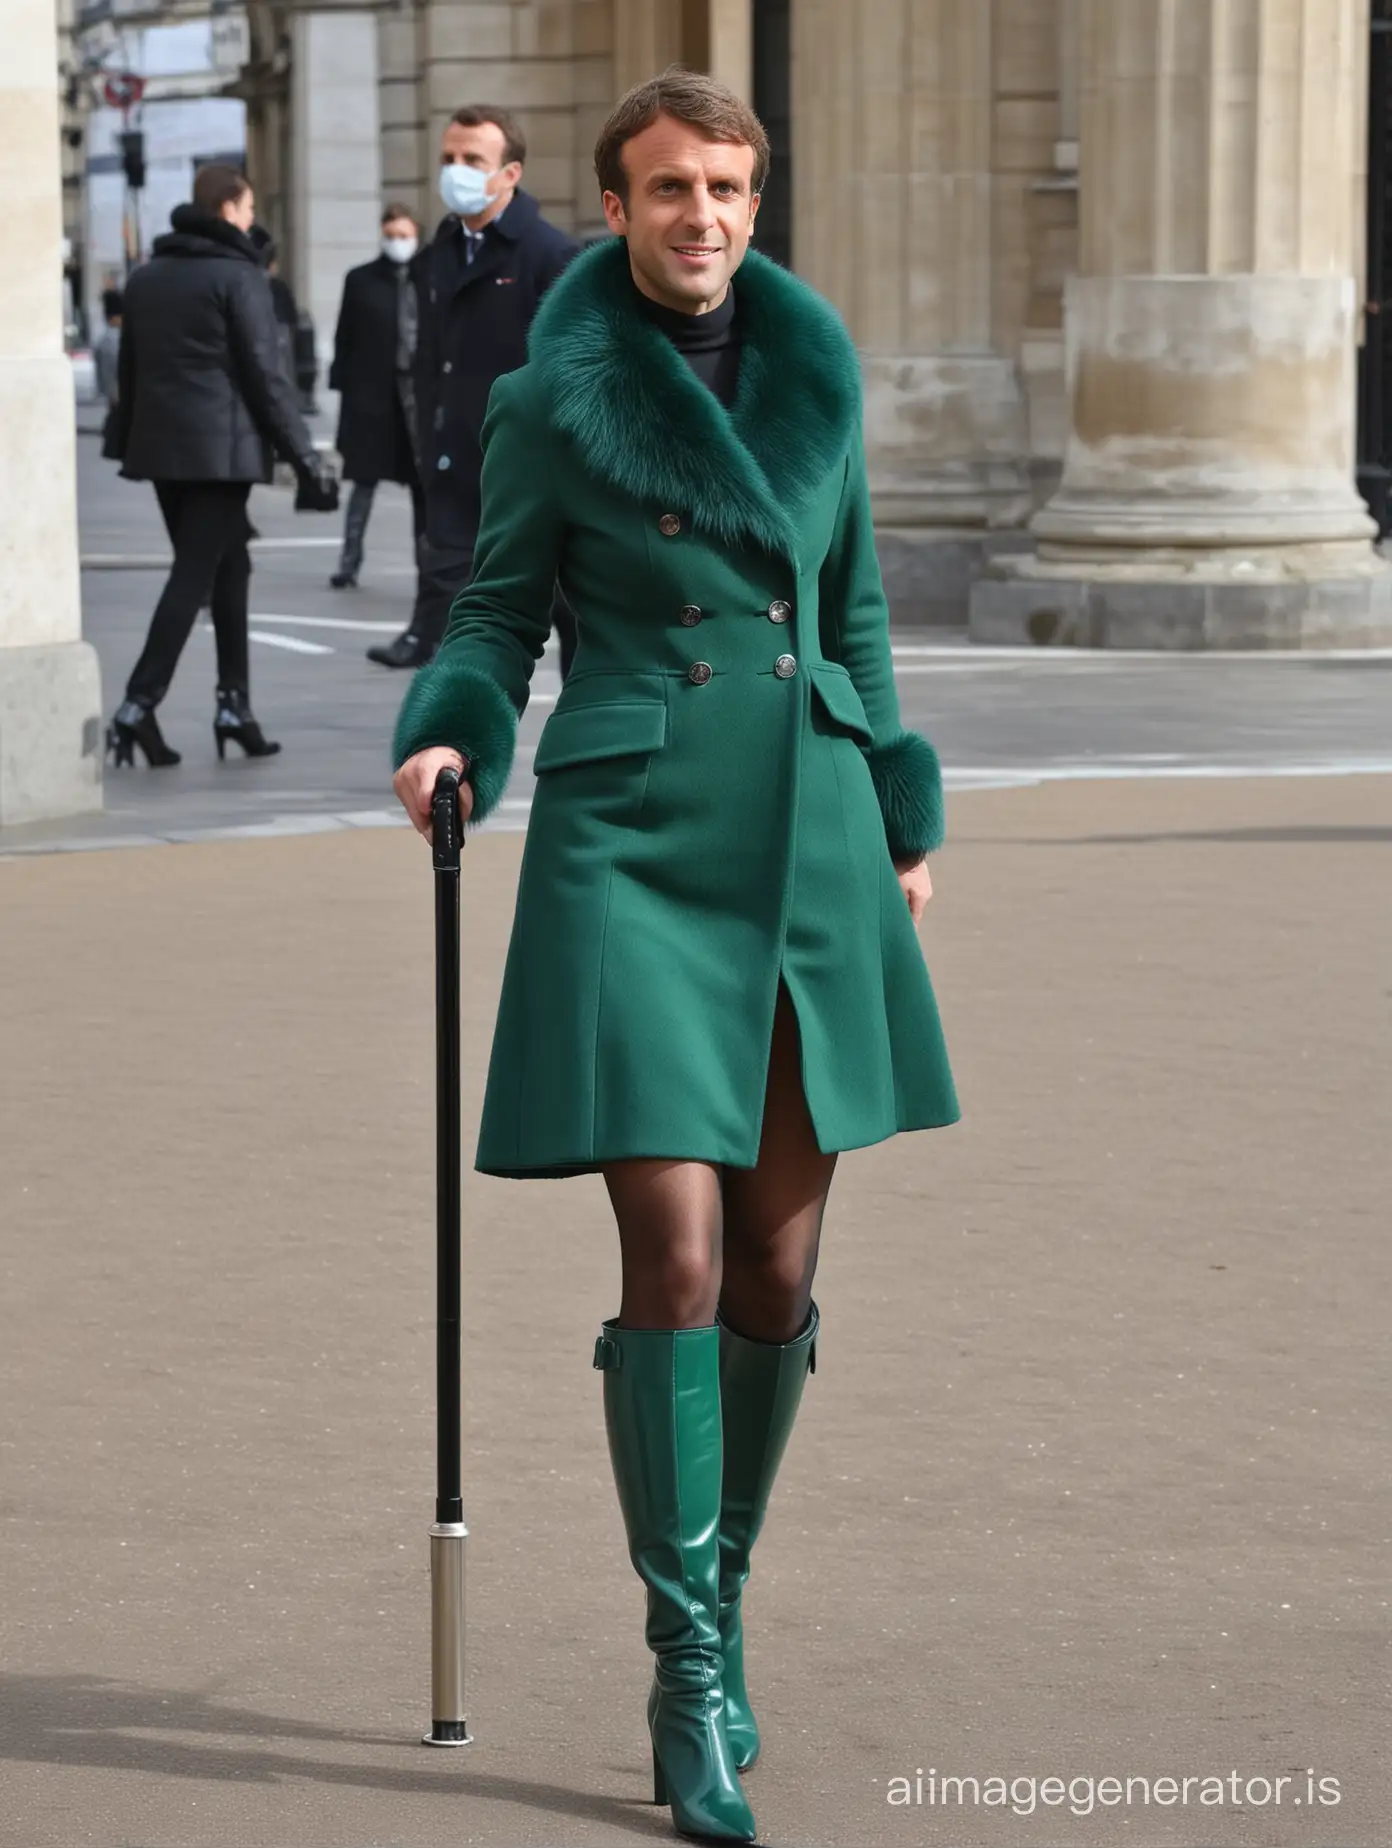 Emmanuel-Macron-Fashionably-Wearing-Green-High-Heels-and-Fur-Coat